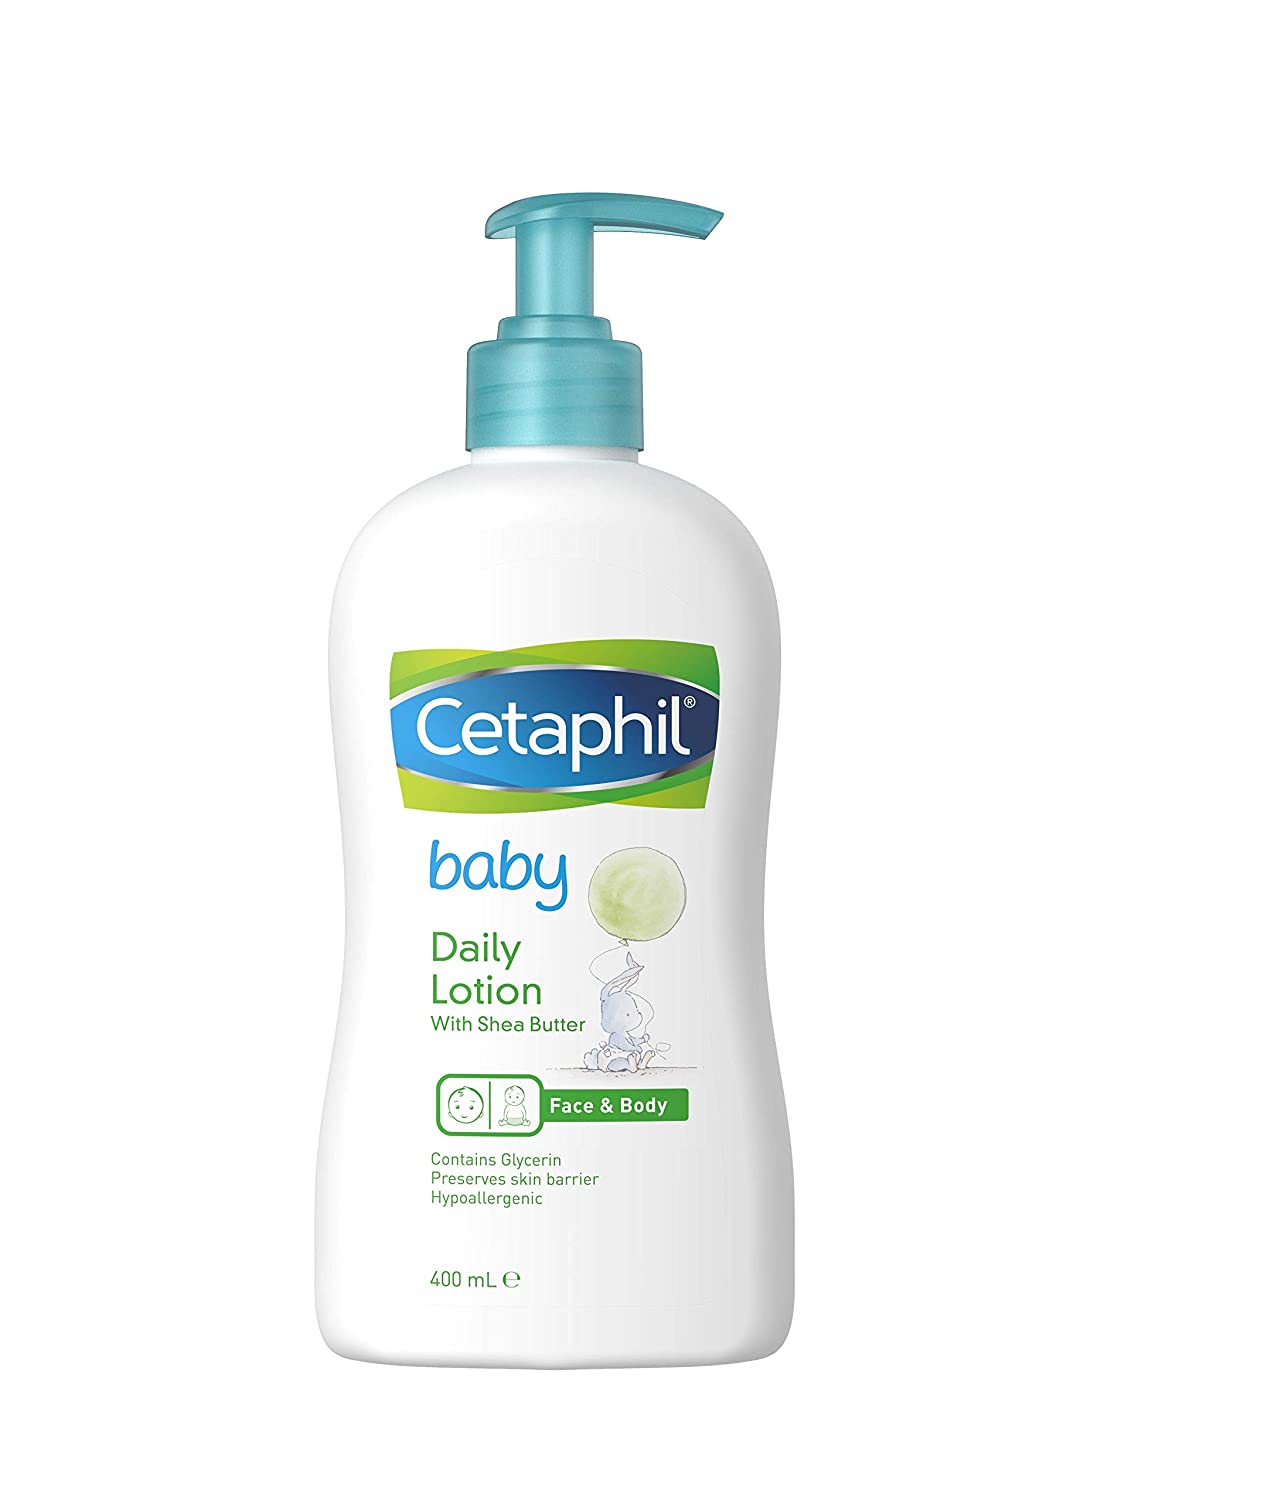 Baby bath & skin care